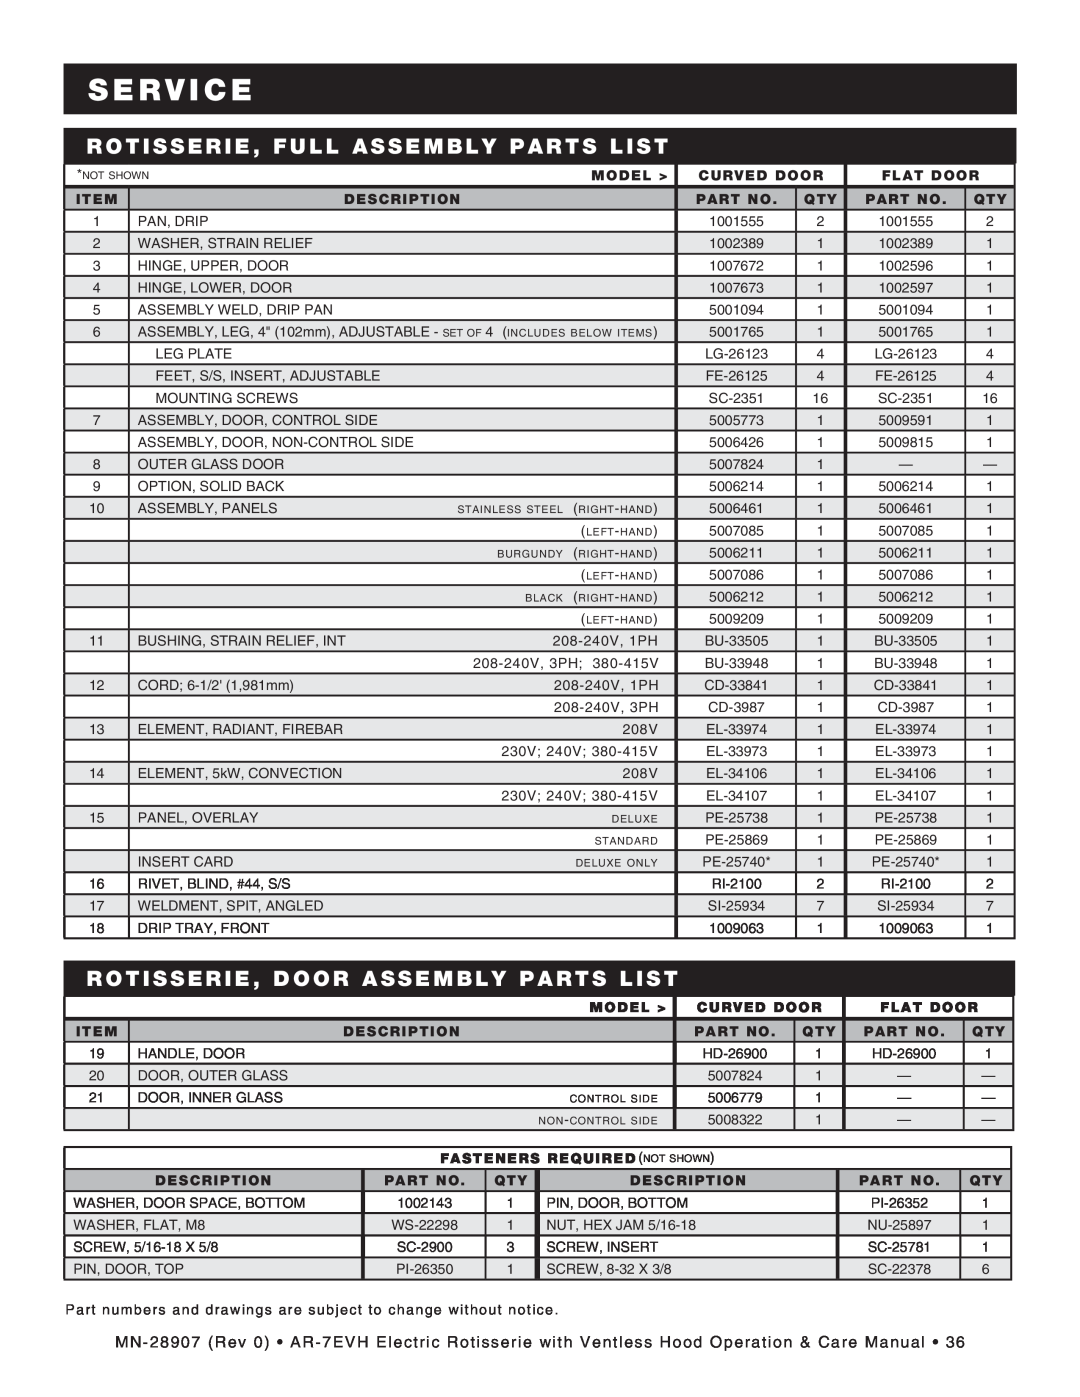 Alto-Shaam ar-7evh manual Rotisserie, Full Assembly Parts List, Rotisserie, Door Assembly Parts List, S E R V I C E 